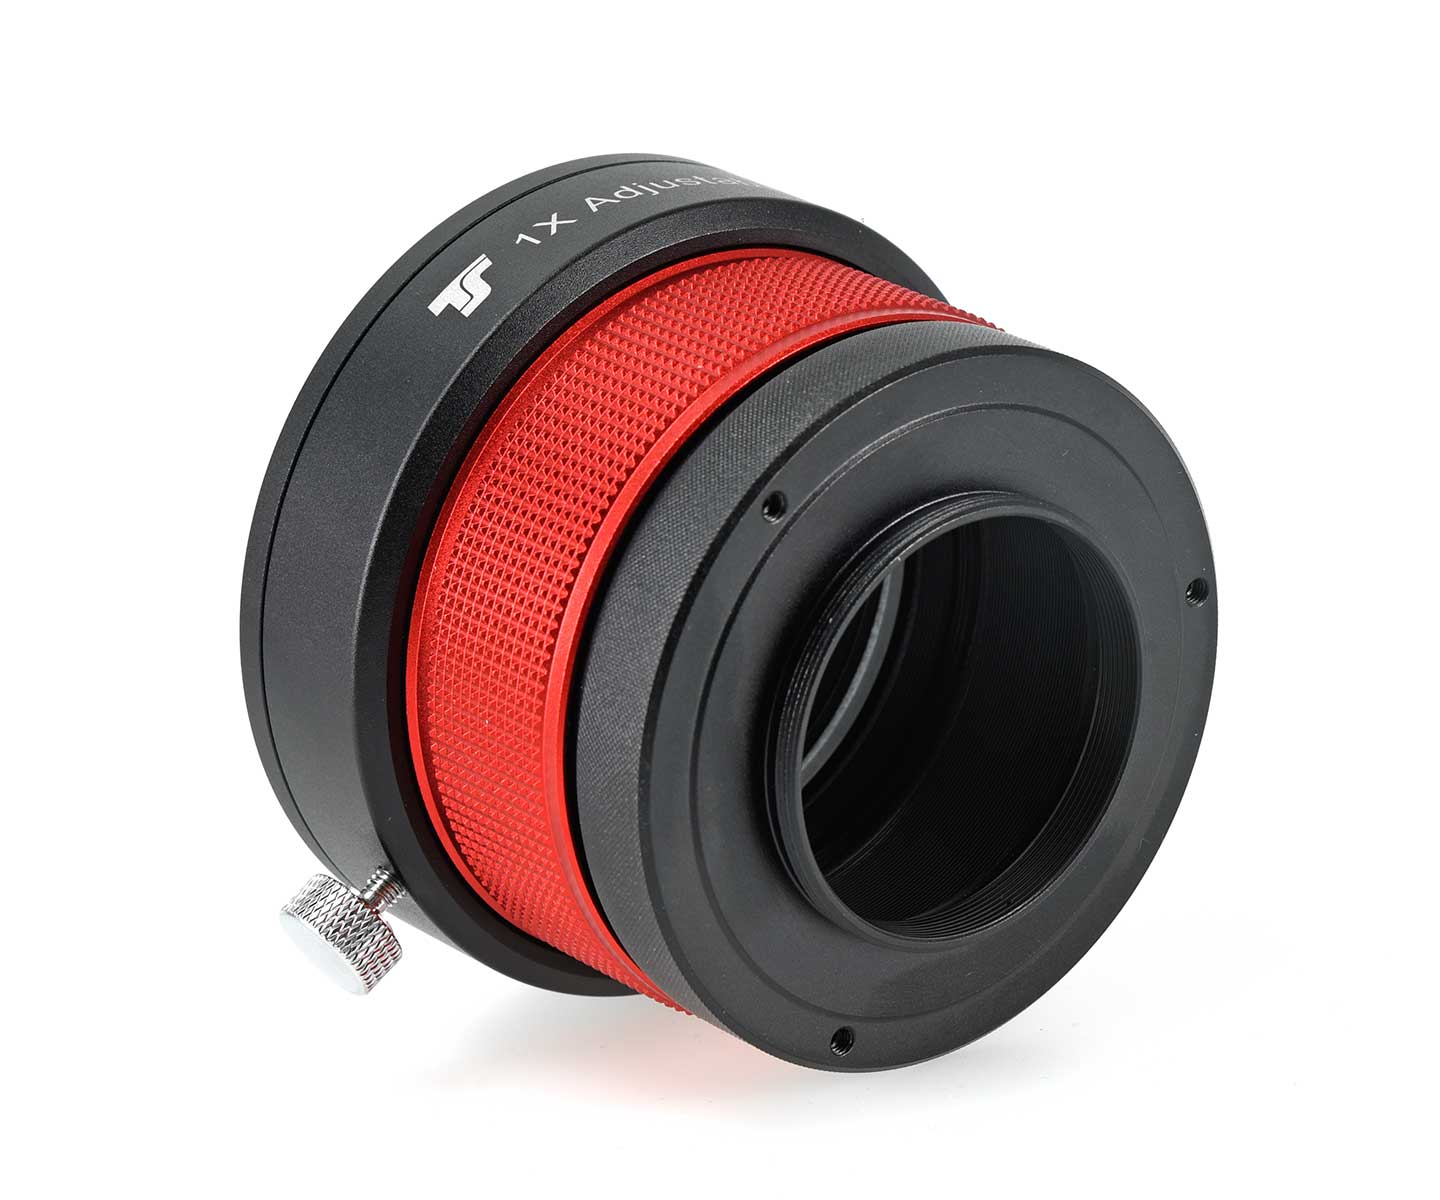  TS-Optics REFRACTOR 1.0x Corrector for refractors from 80-155 mm aperture - ADJUSTABLE [EN] 